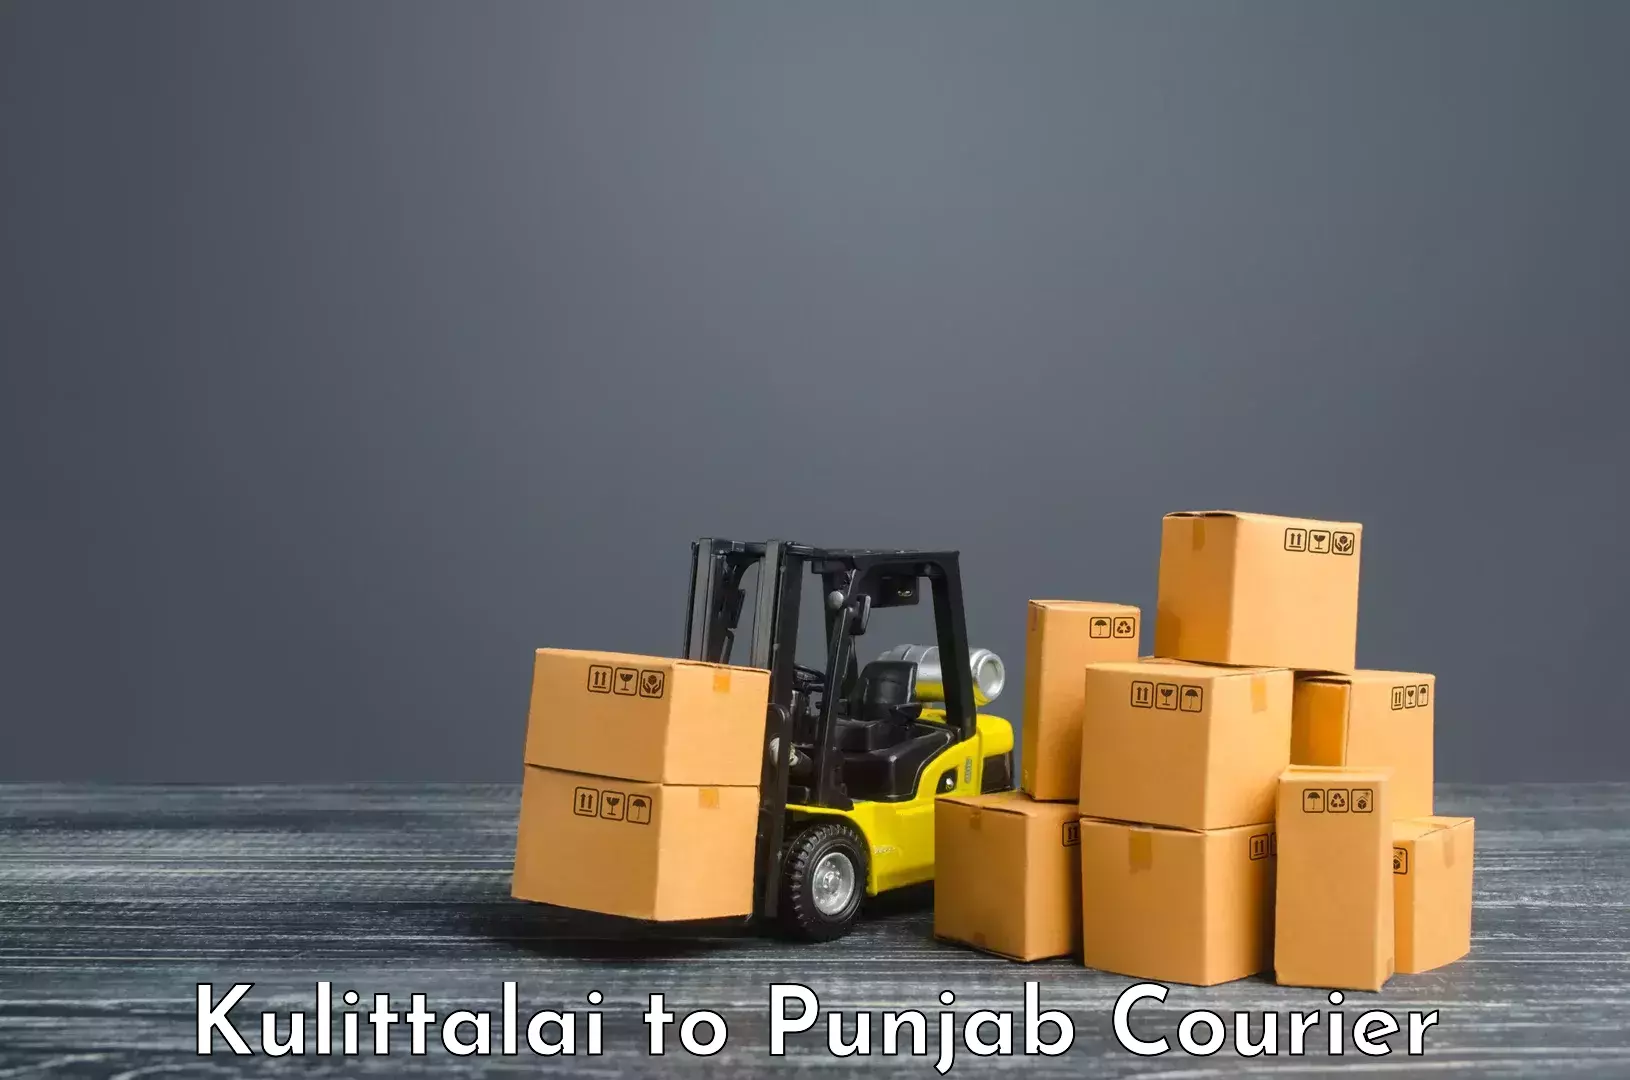 Holiday shipping services Kulittalai to Punjab